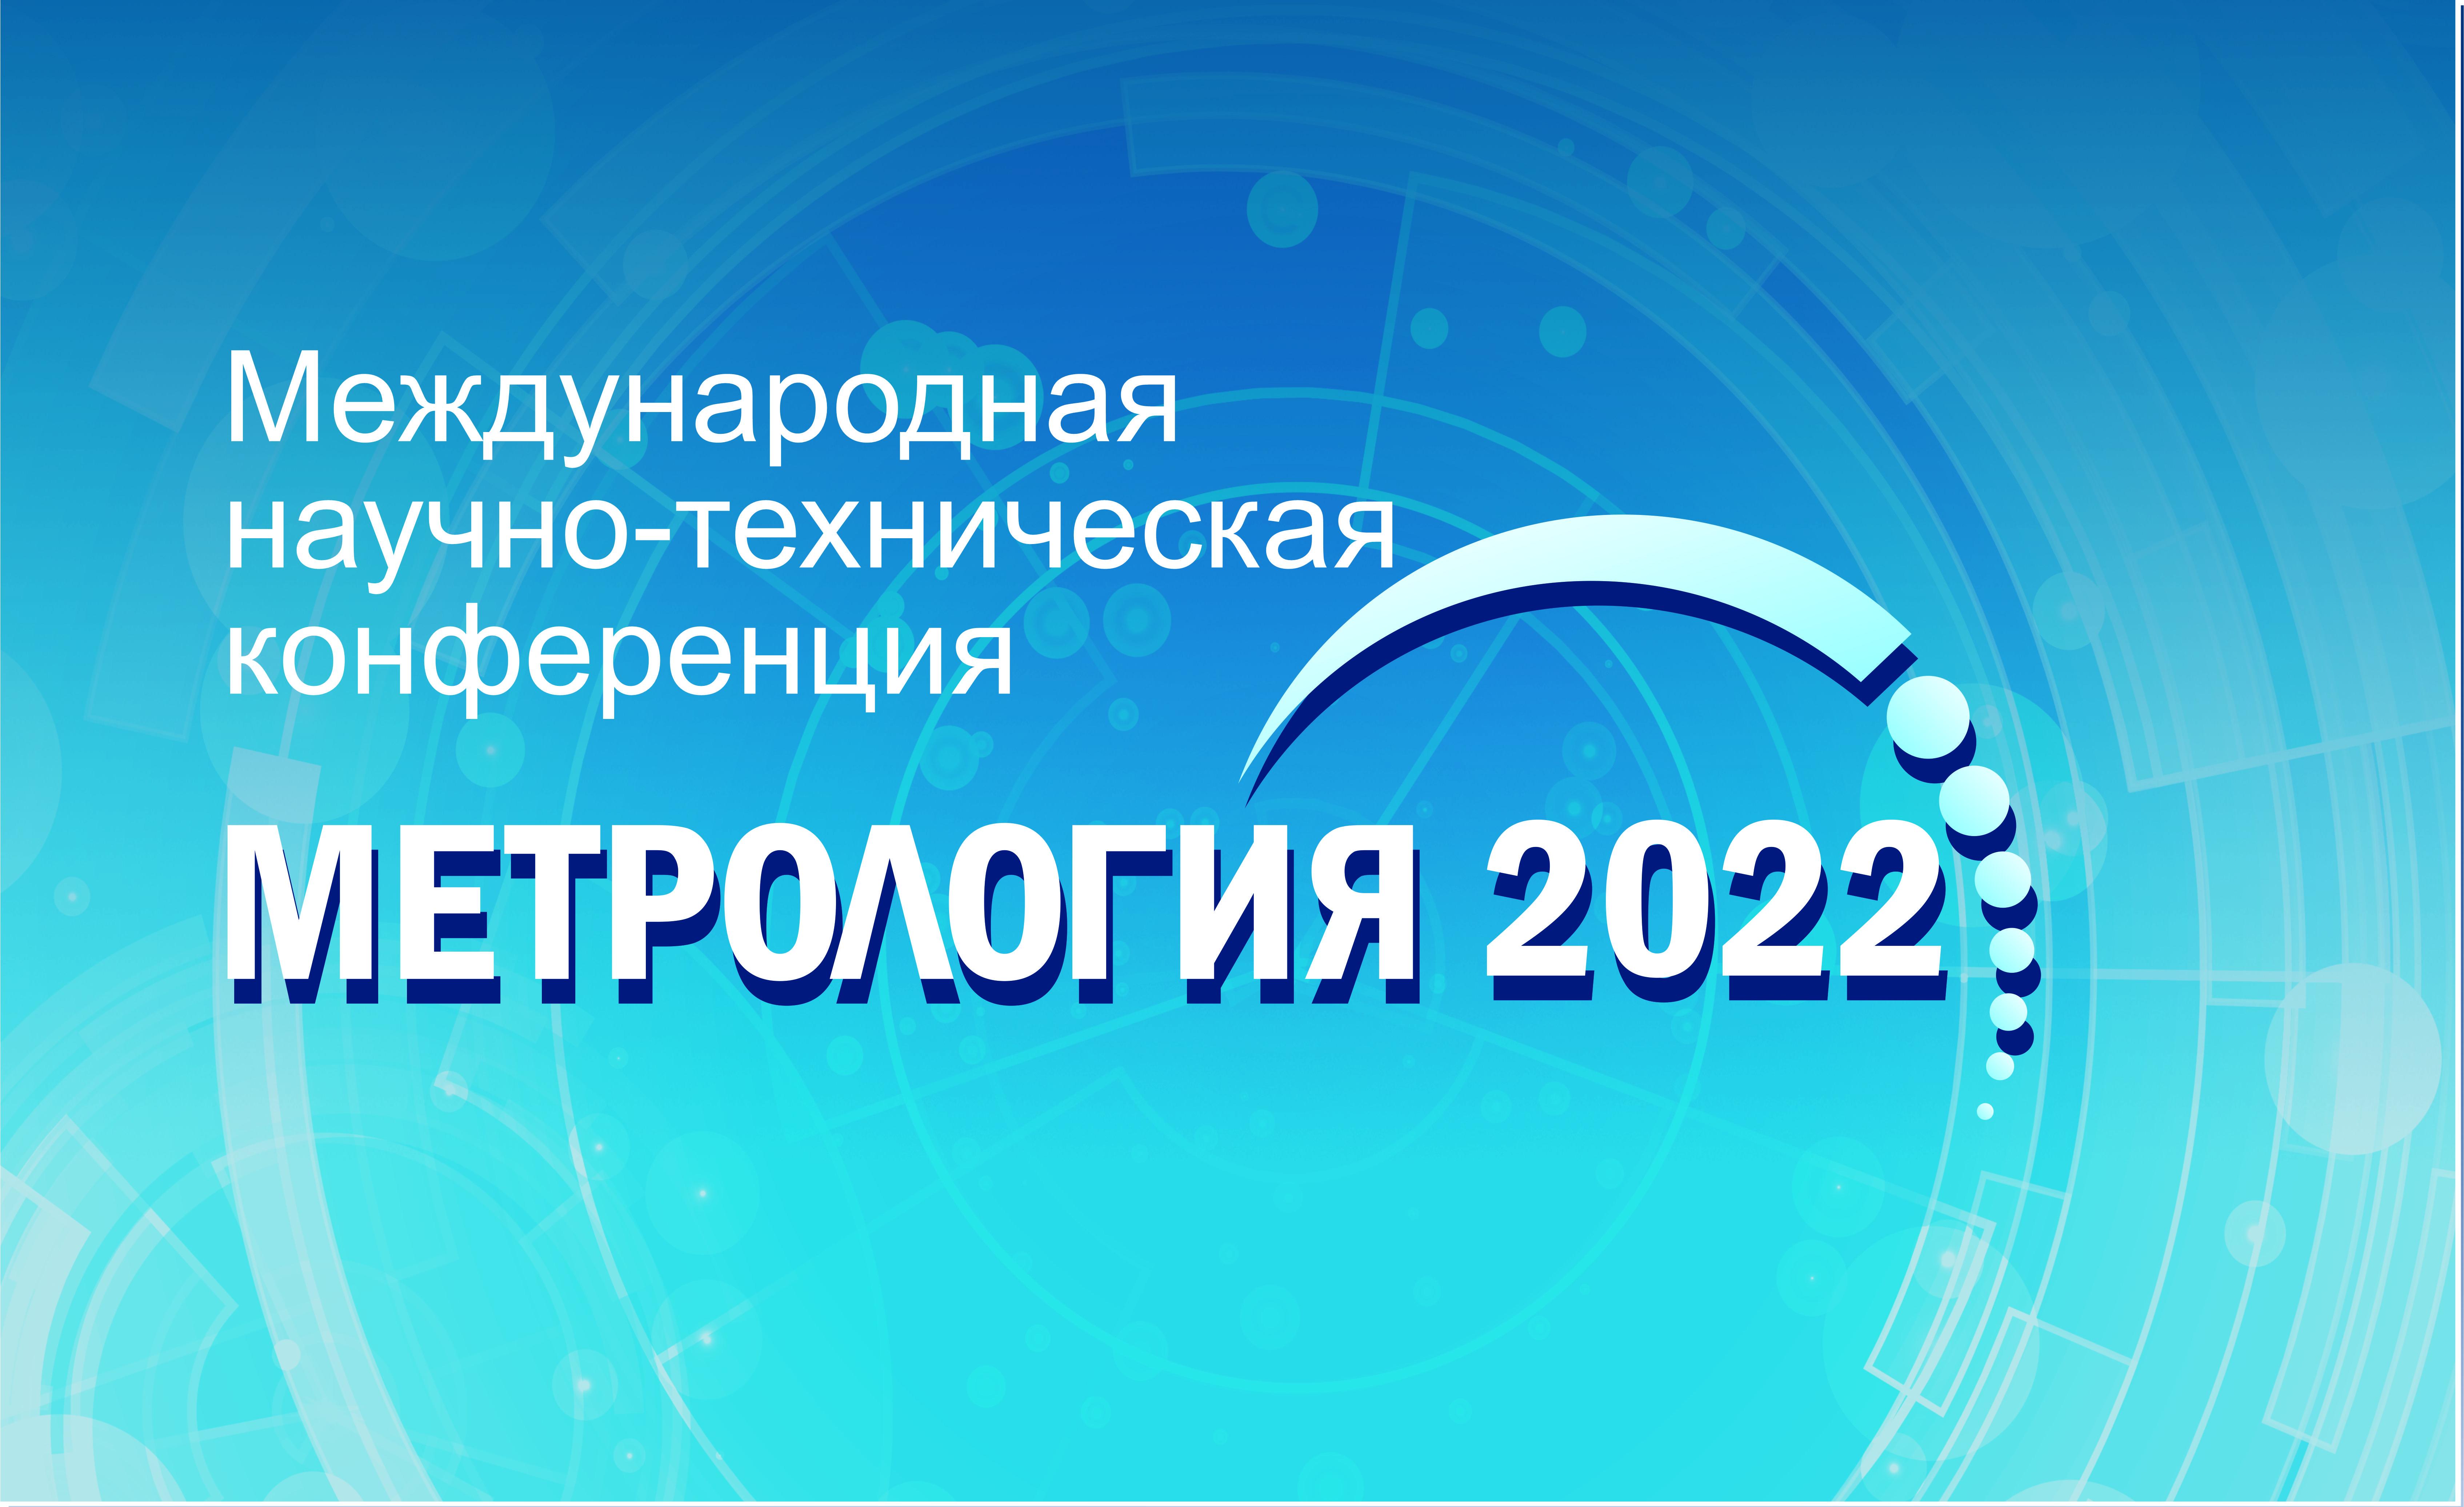 ВНИИМ им. Менделеева (Росстандарт) примет участие в конференции «Метрология -2022»